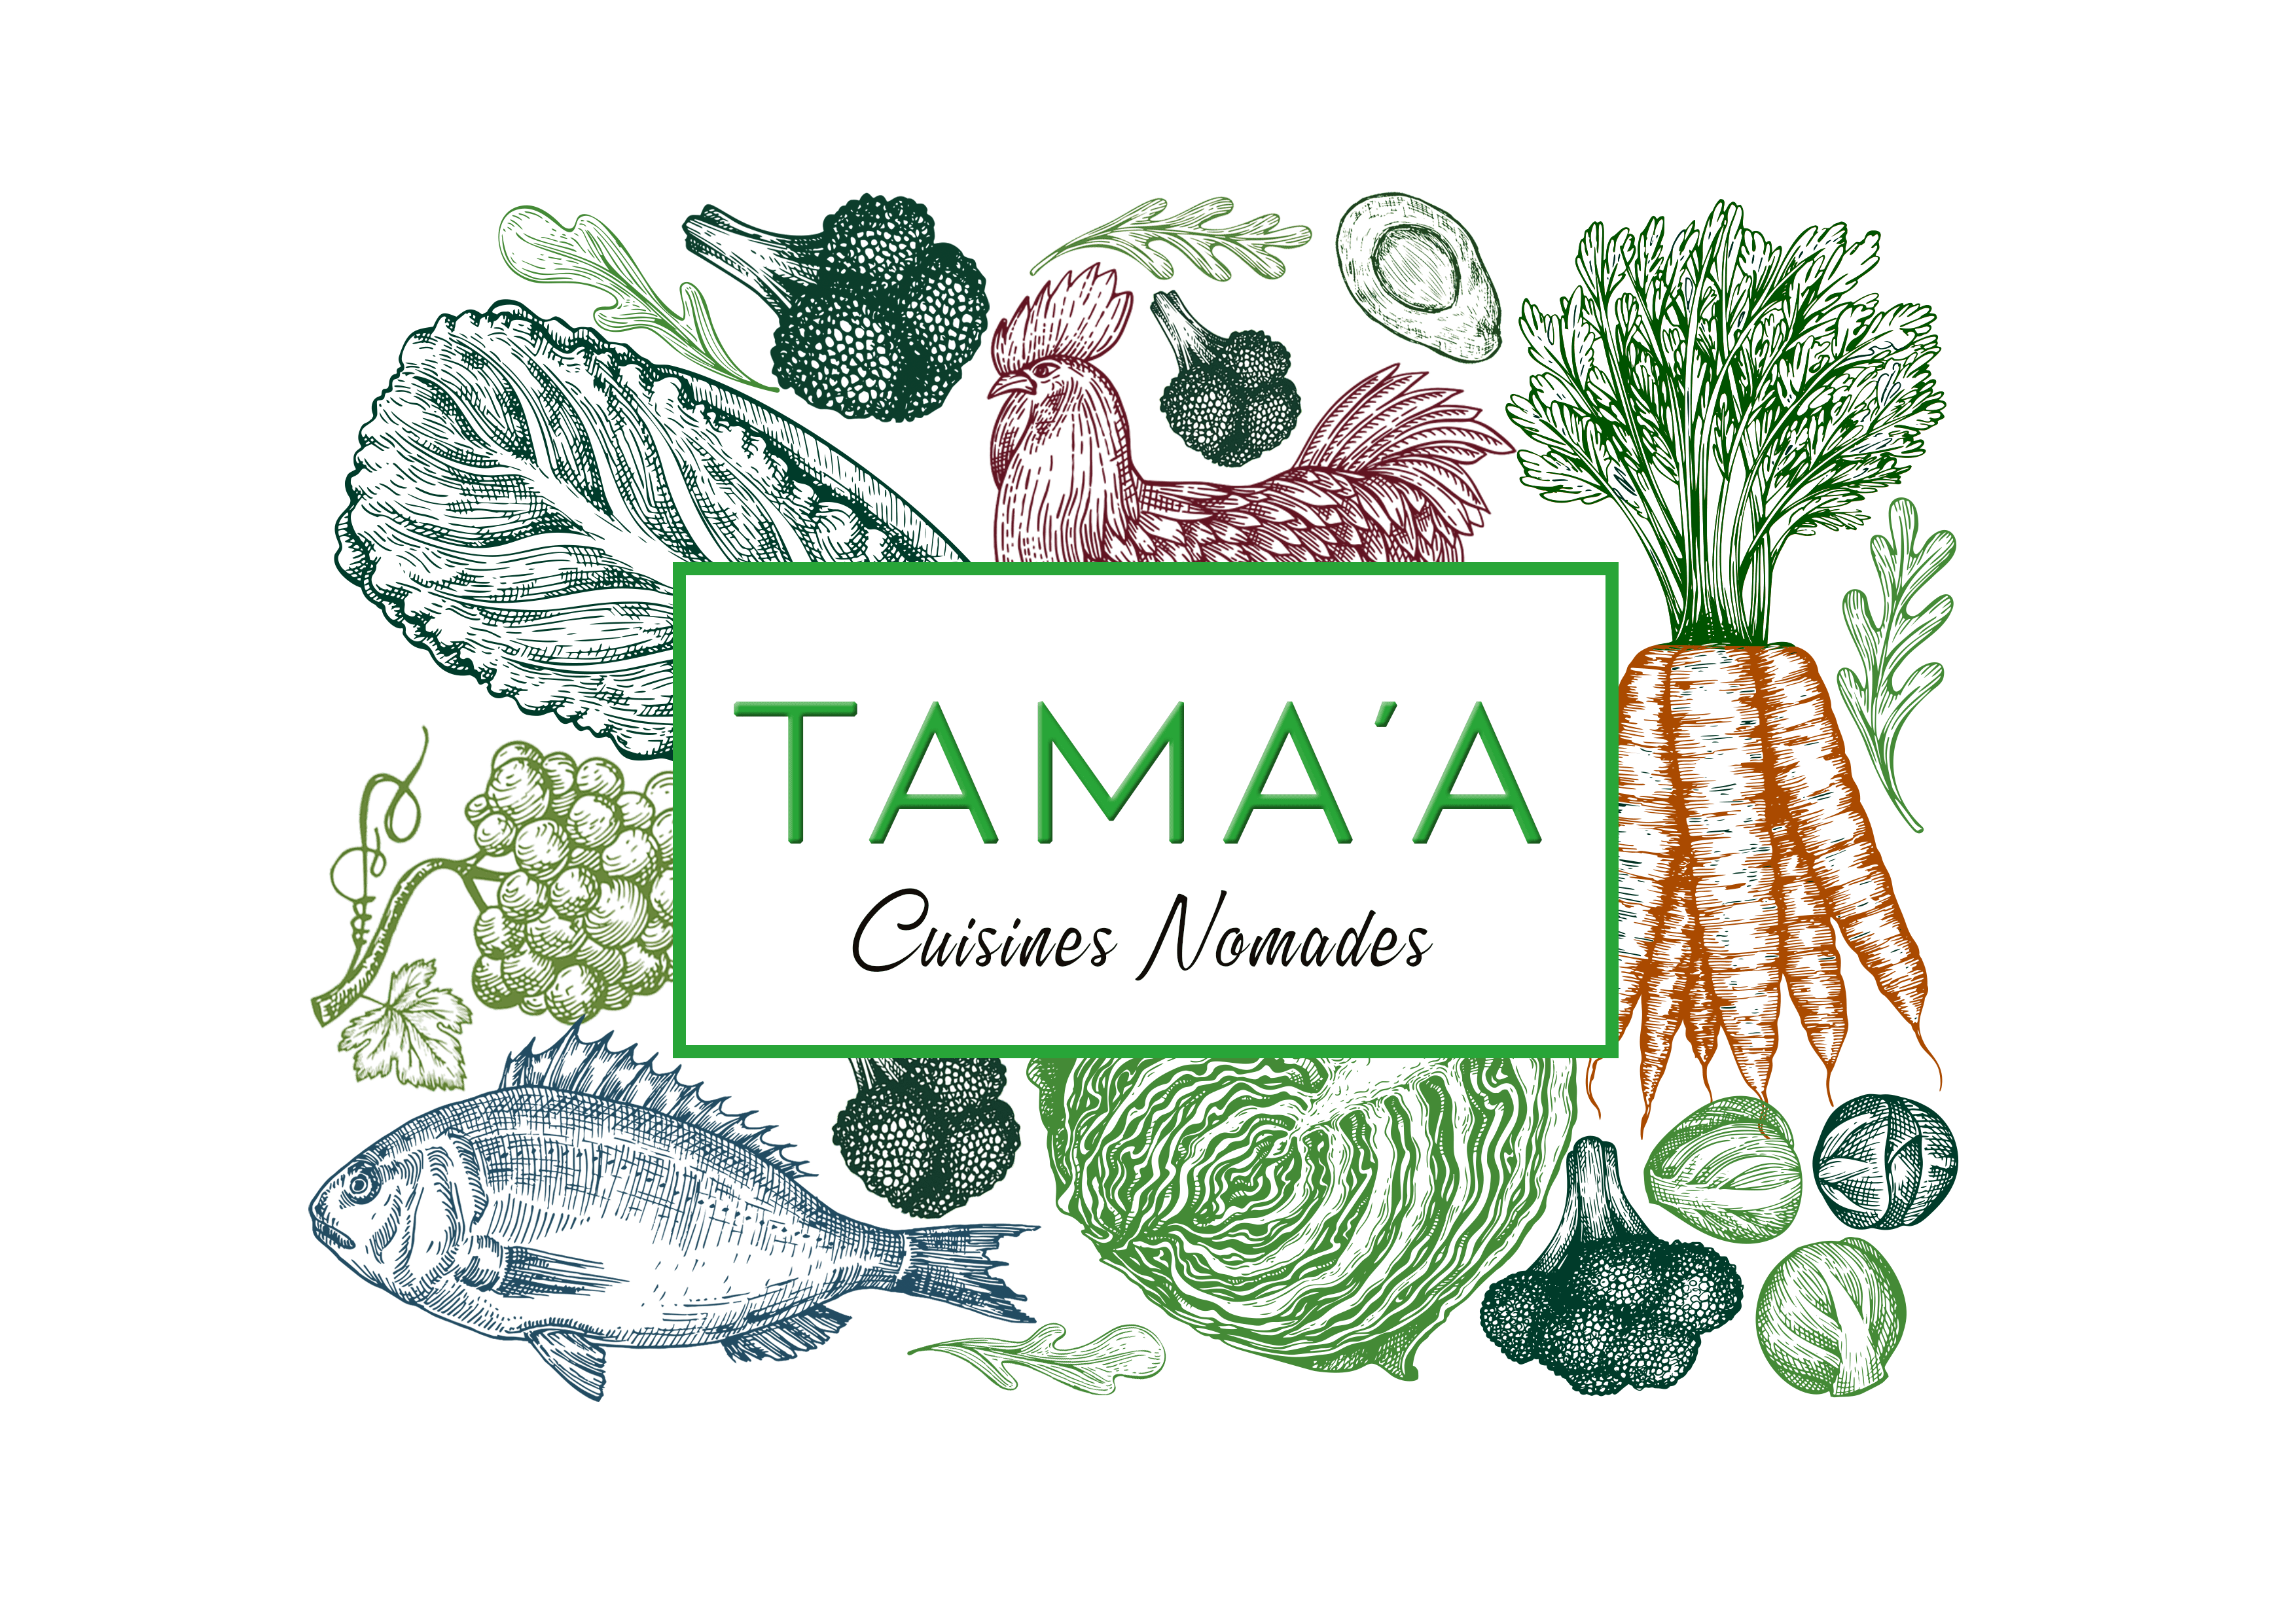 Ceci est le logo de Tama'a, un service traiteur sur la Cote d'Azur